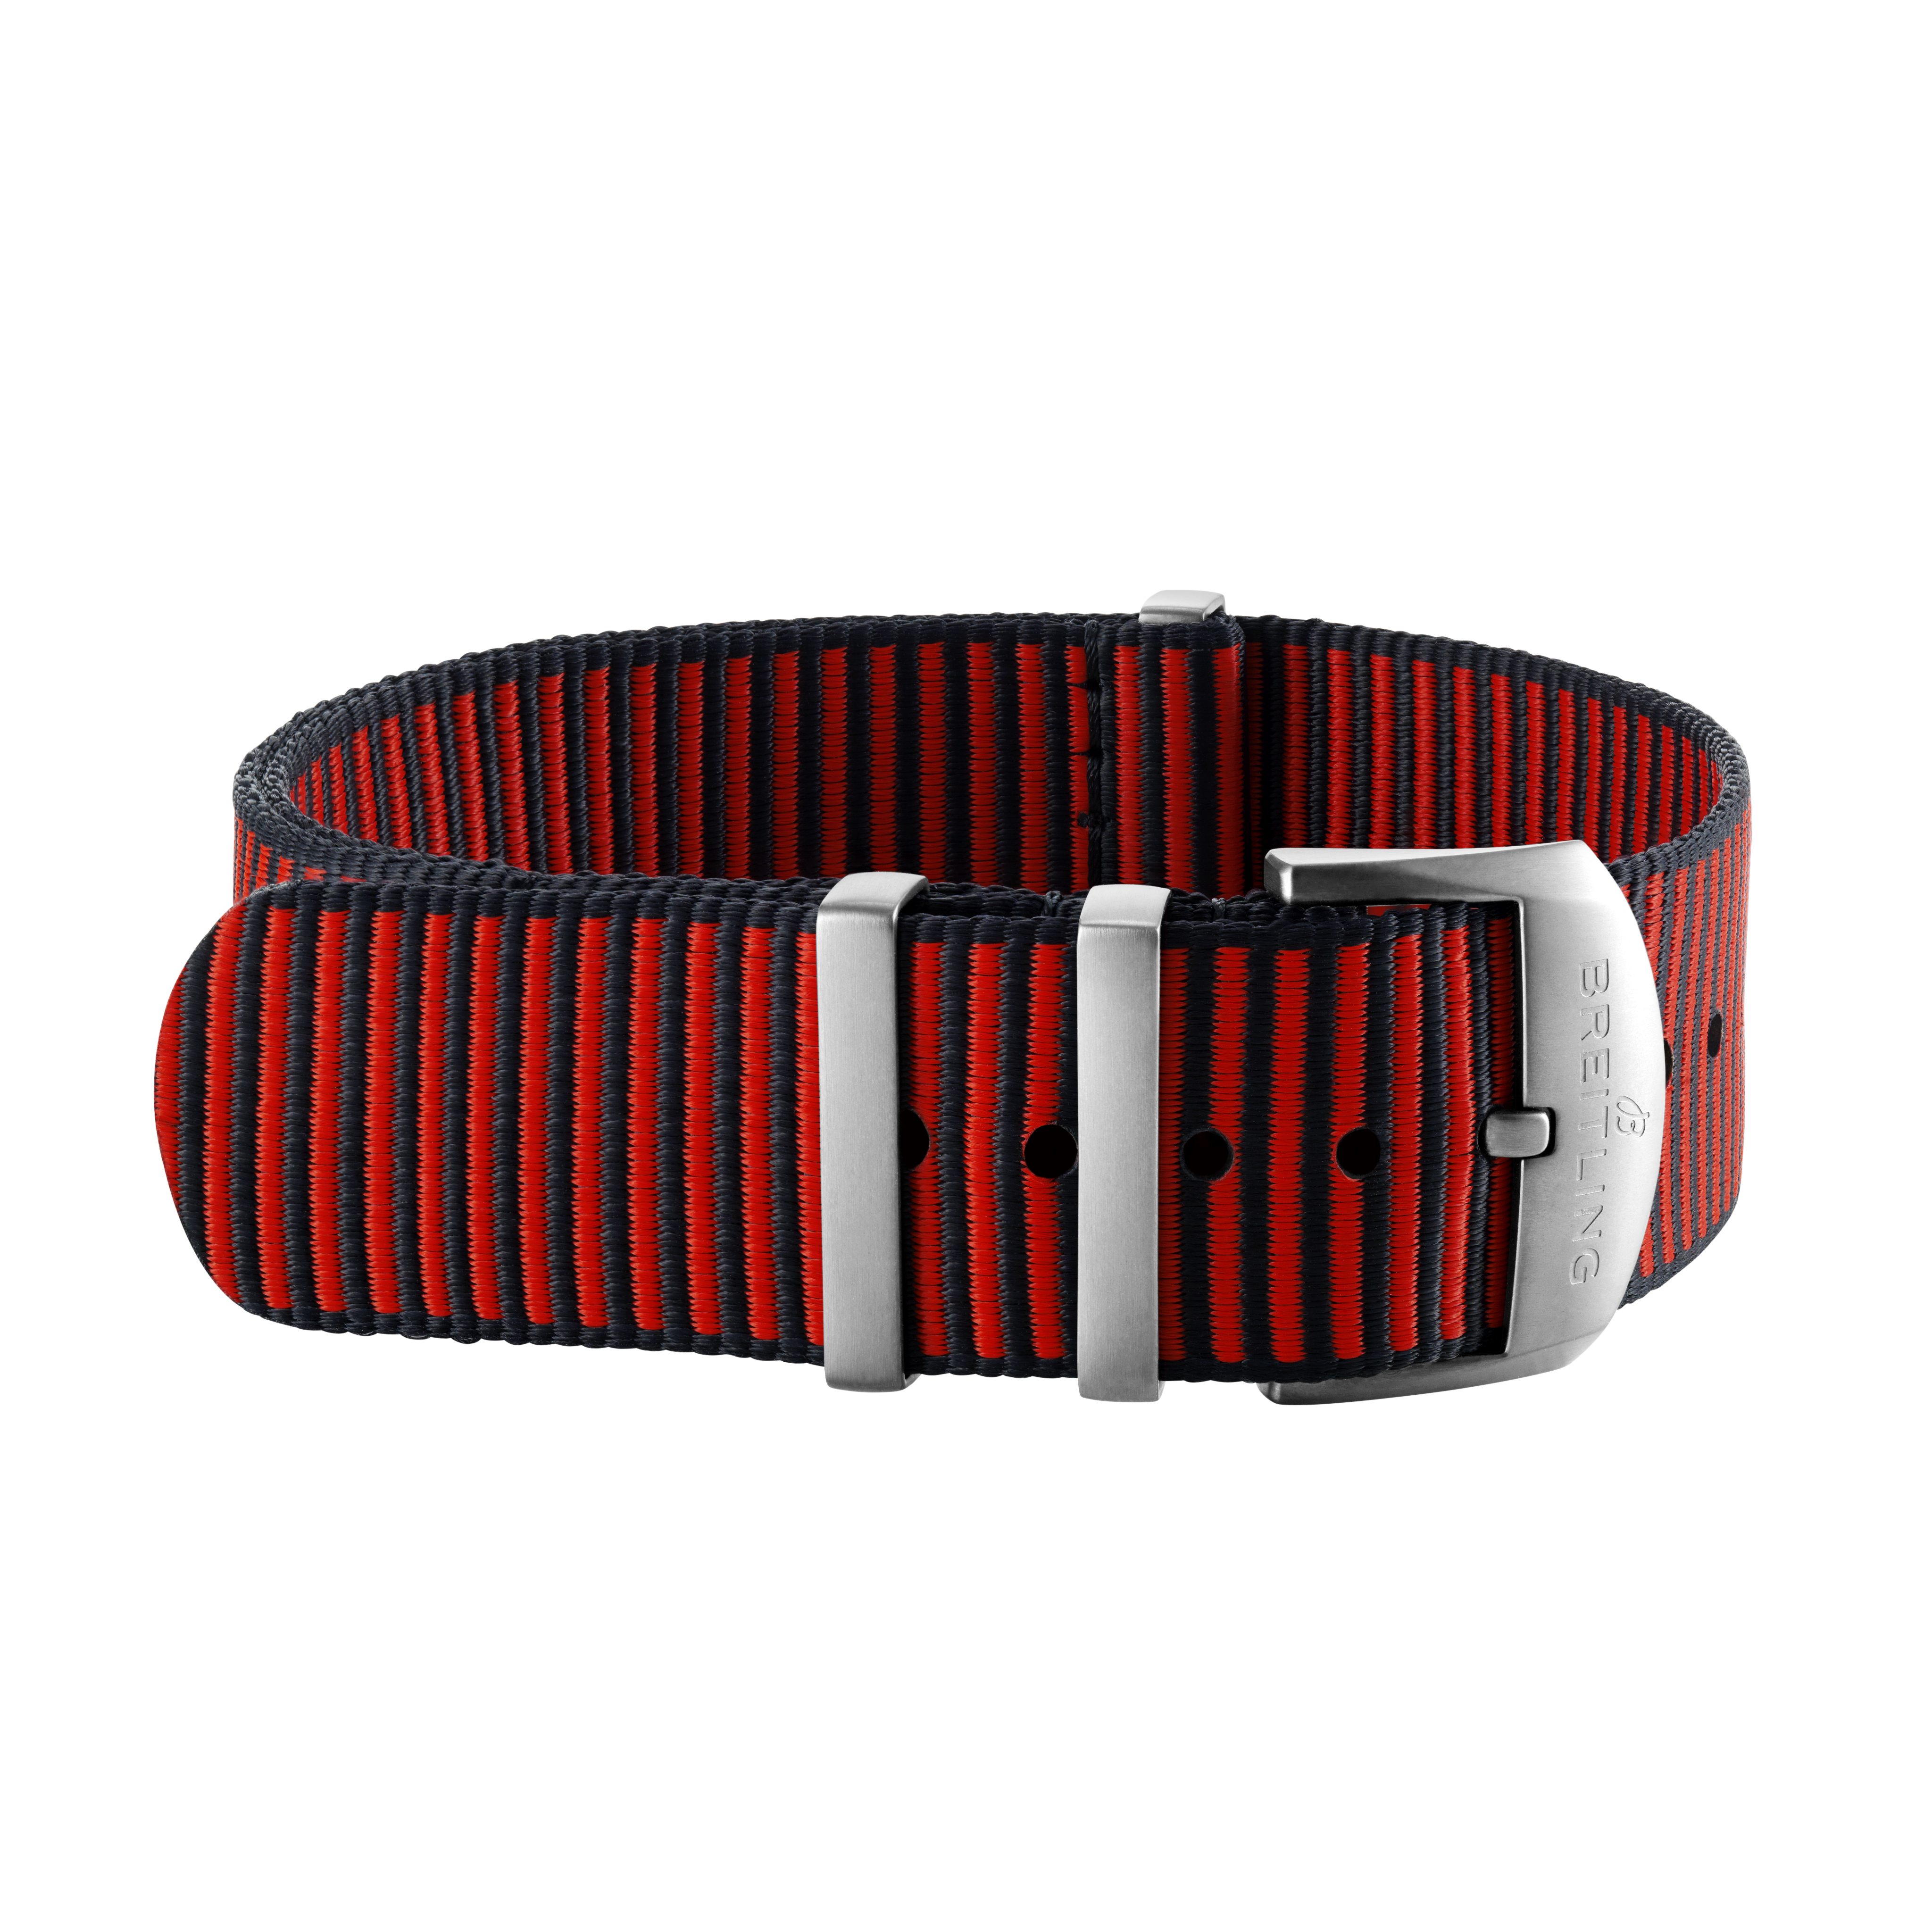 Bracelet une pièce Outerknown en fil ECONYL® rouge (avec passants en acier inoxydable) - 20 mm